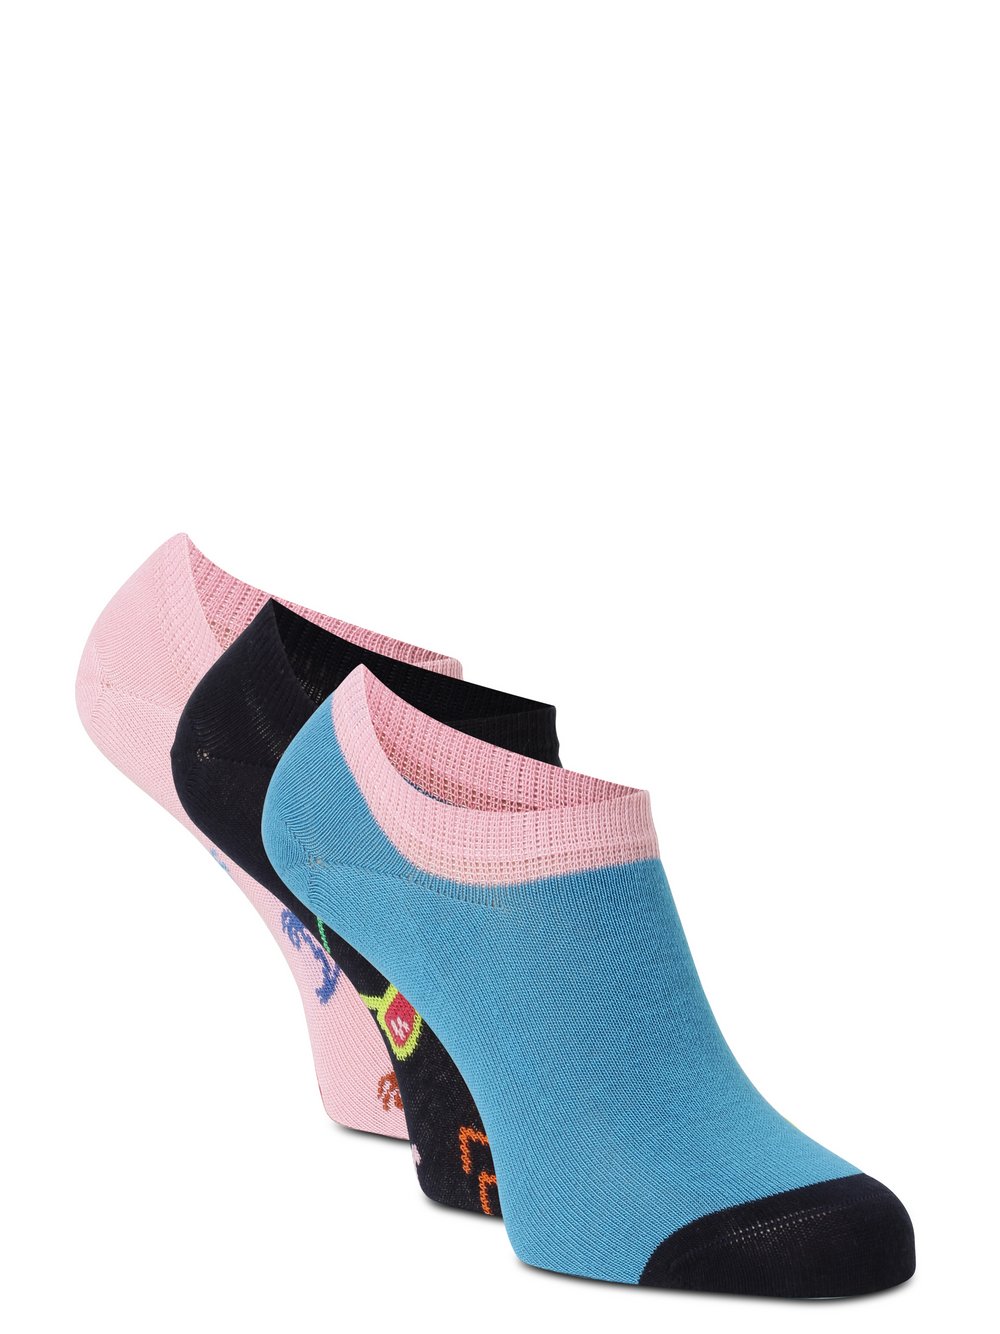 Happy Socks - Skarpety do obuwia sportowego pakowane po 3 szt., niebieski|różowy|wielokolorowy